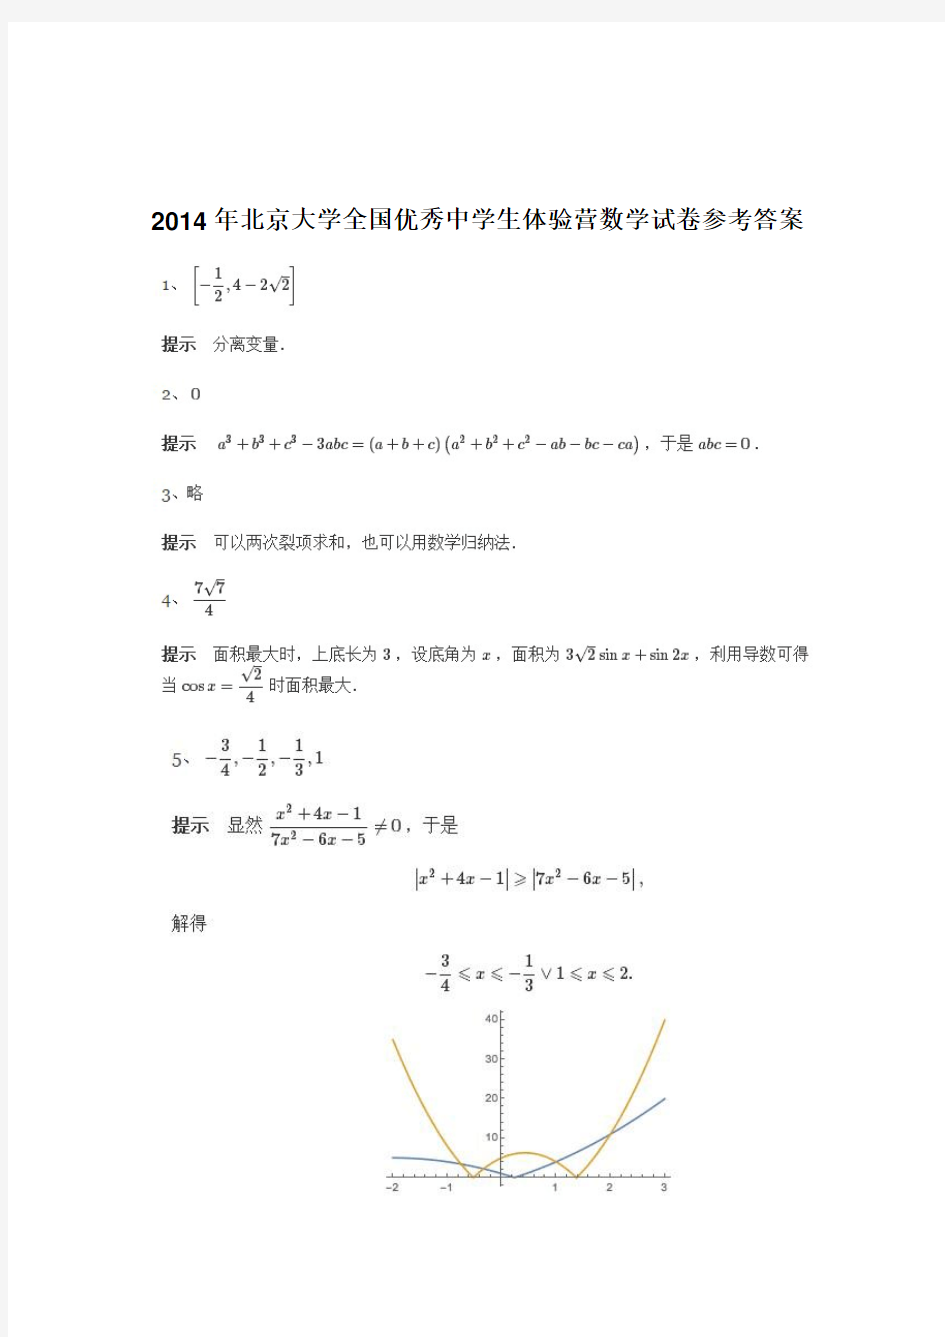 2014年北京大学优秀中学生体验营数学试卷及答案